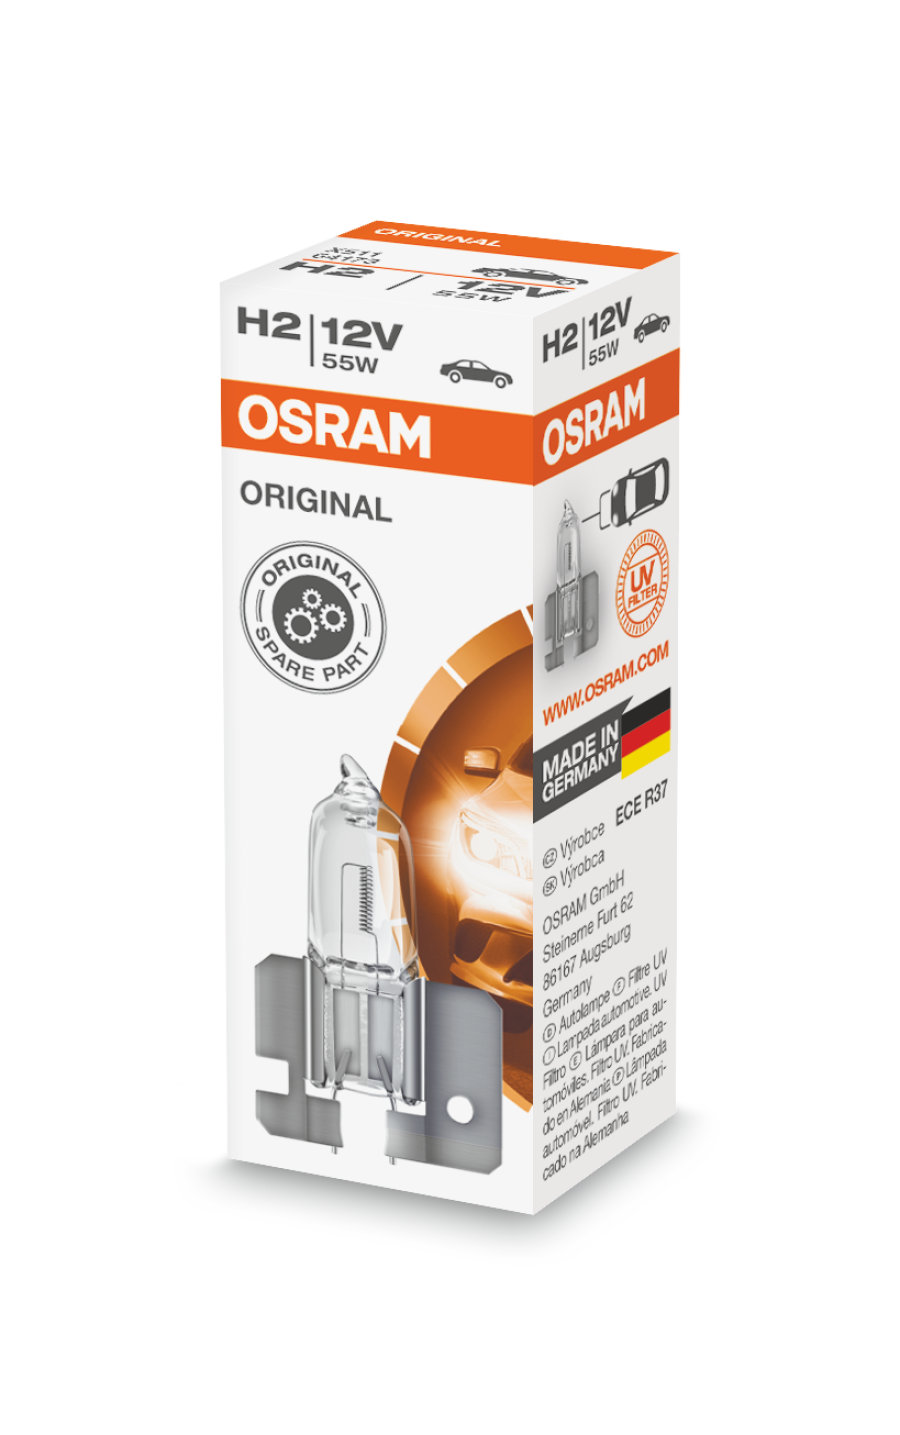 OSRAM ORIGINAL LINE 12V H2